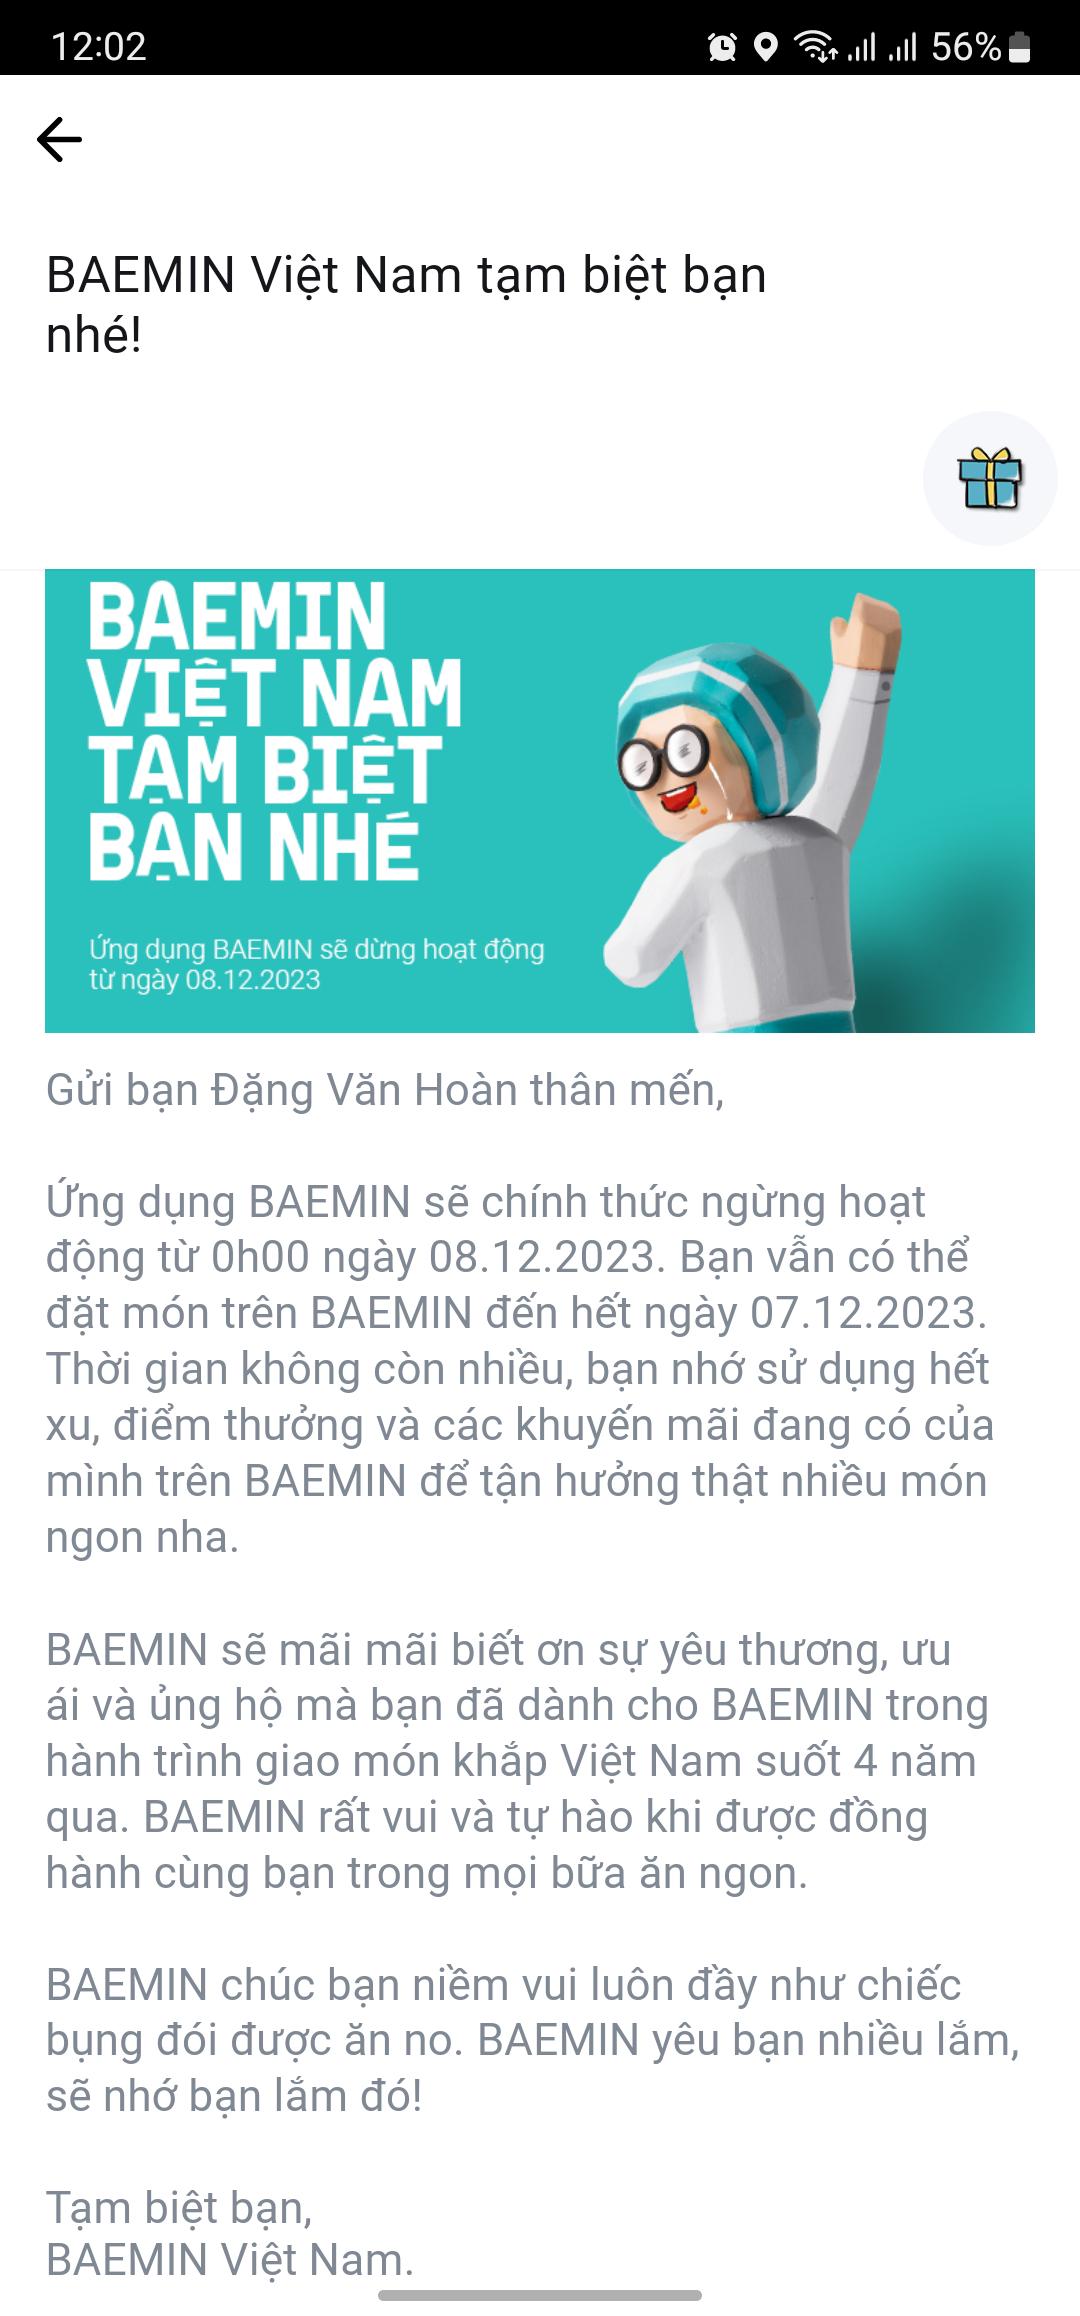 Baemin rút lui khỏi thị trường Việt Nam